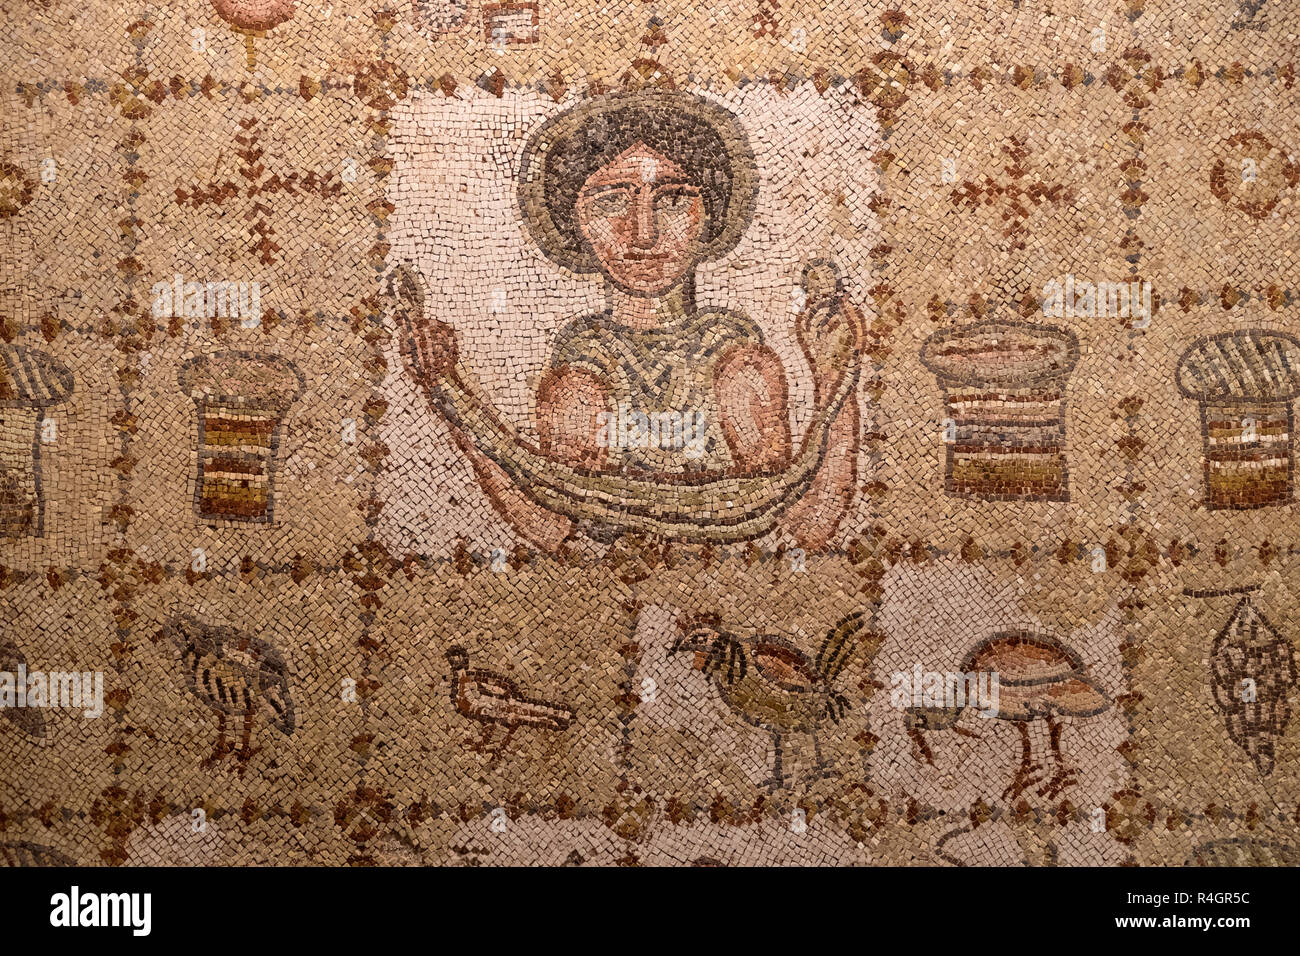 Lebanon, Beiteddine Palace. mosaic; Stock Photo